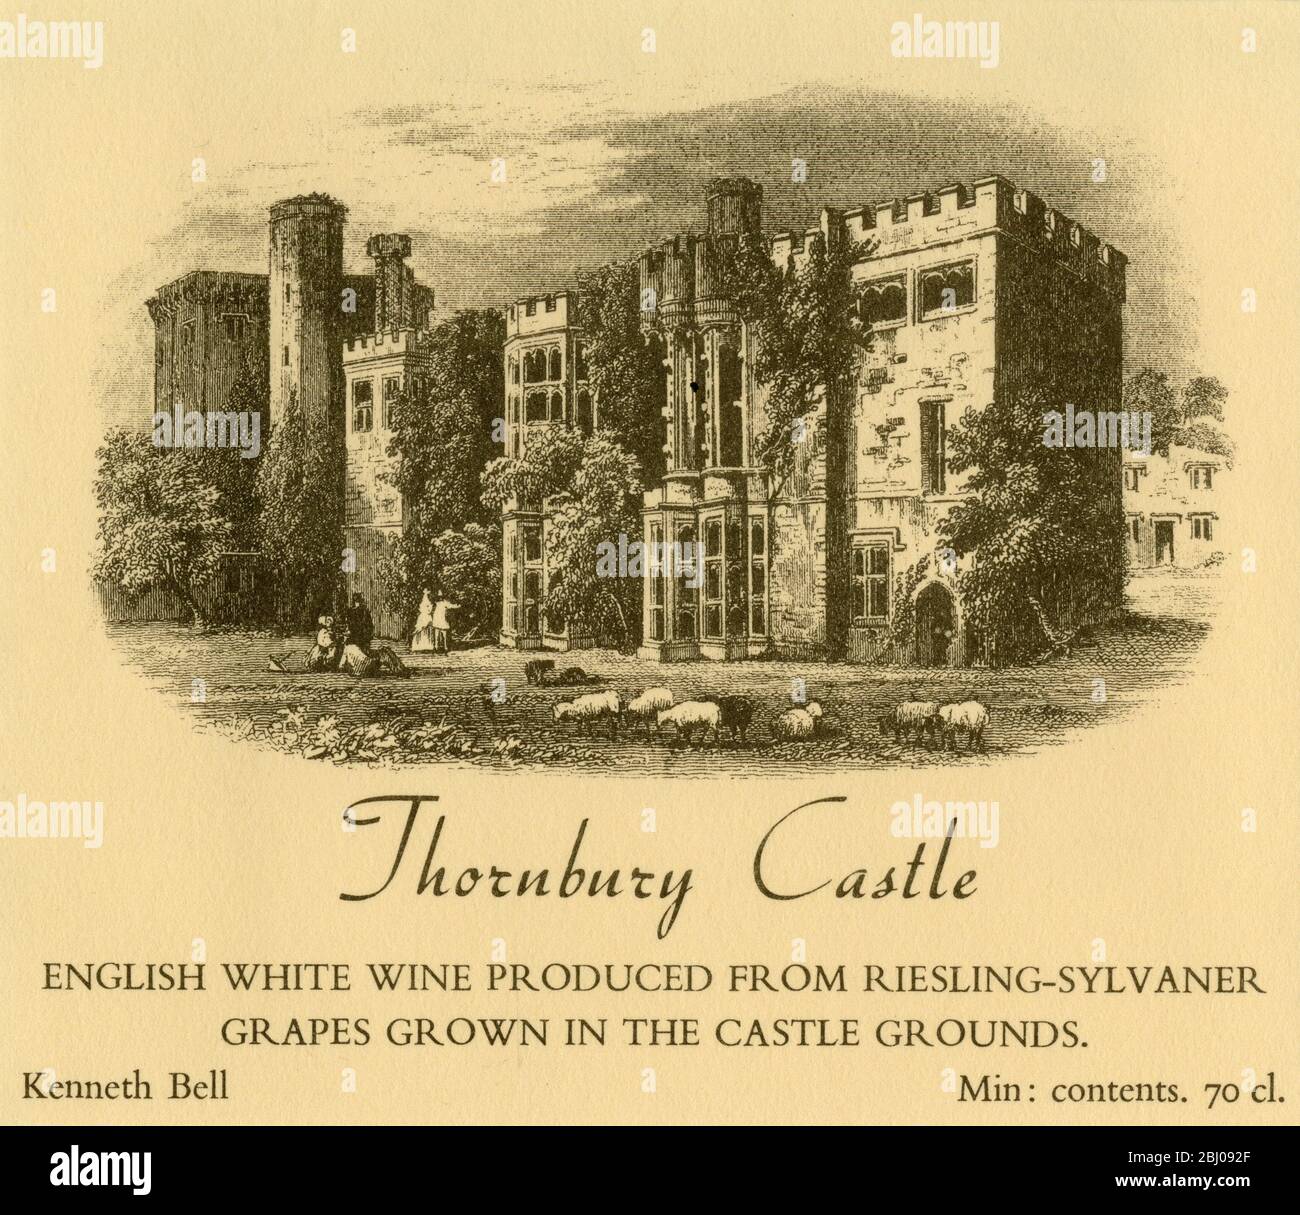 Weinetikett - Thornbury Castle Englischer Weißwein. Hergestellt aus Riesling-Sylvaner-Trauben, die auf dem Schlossgelände in Bristol angebaut werden. Stockfoto